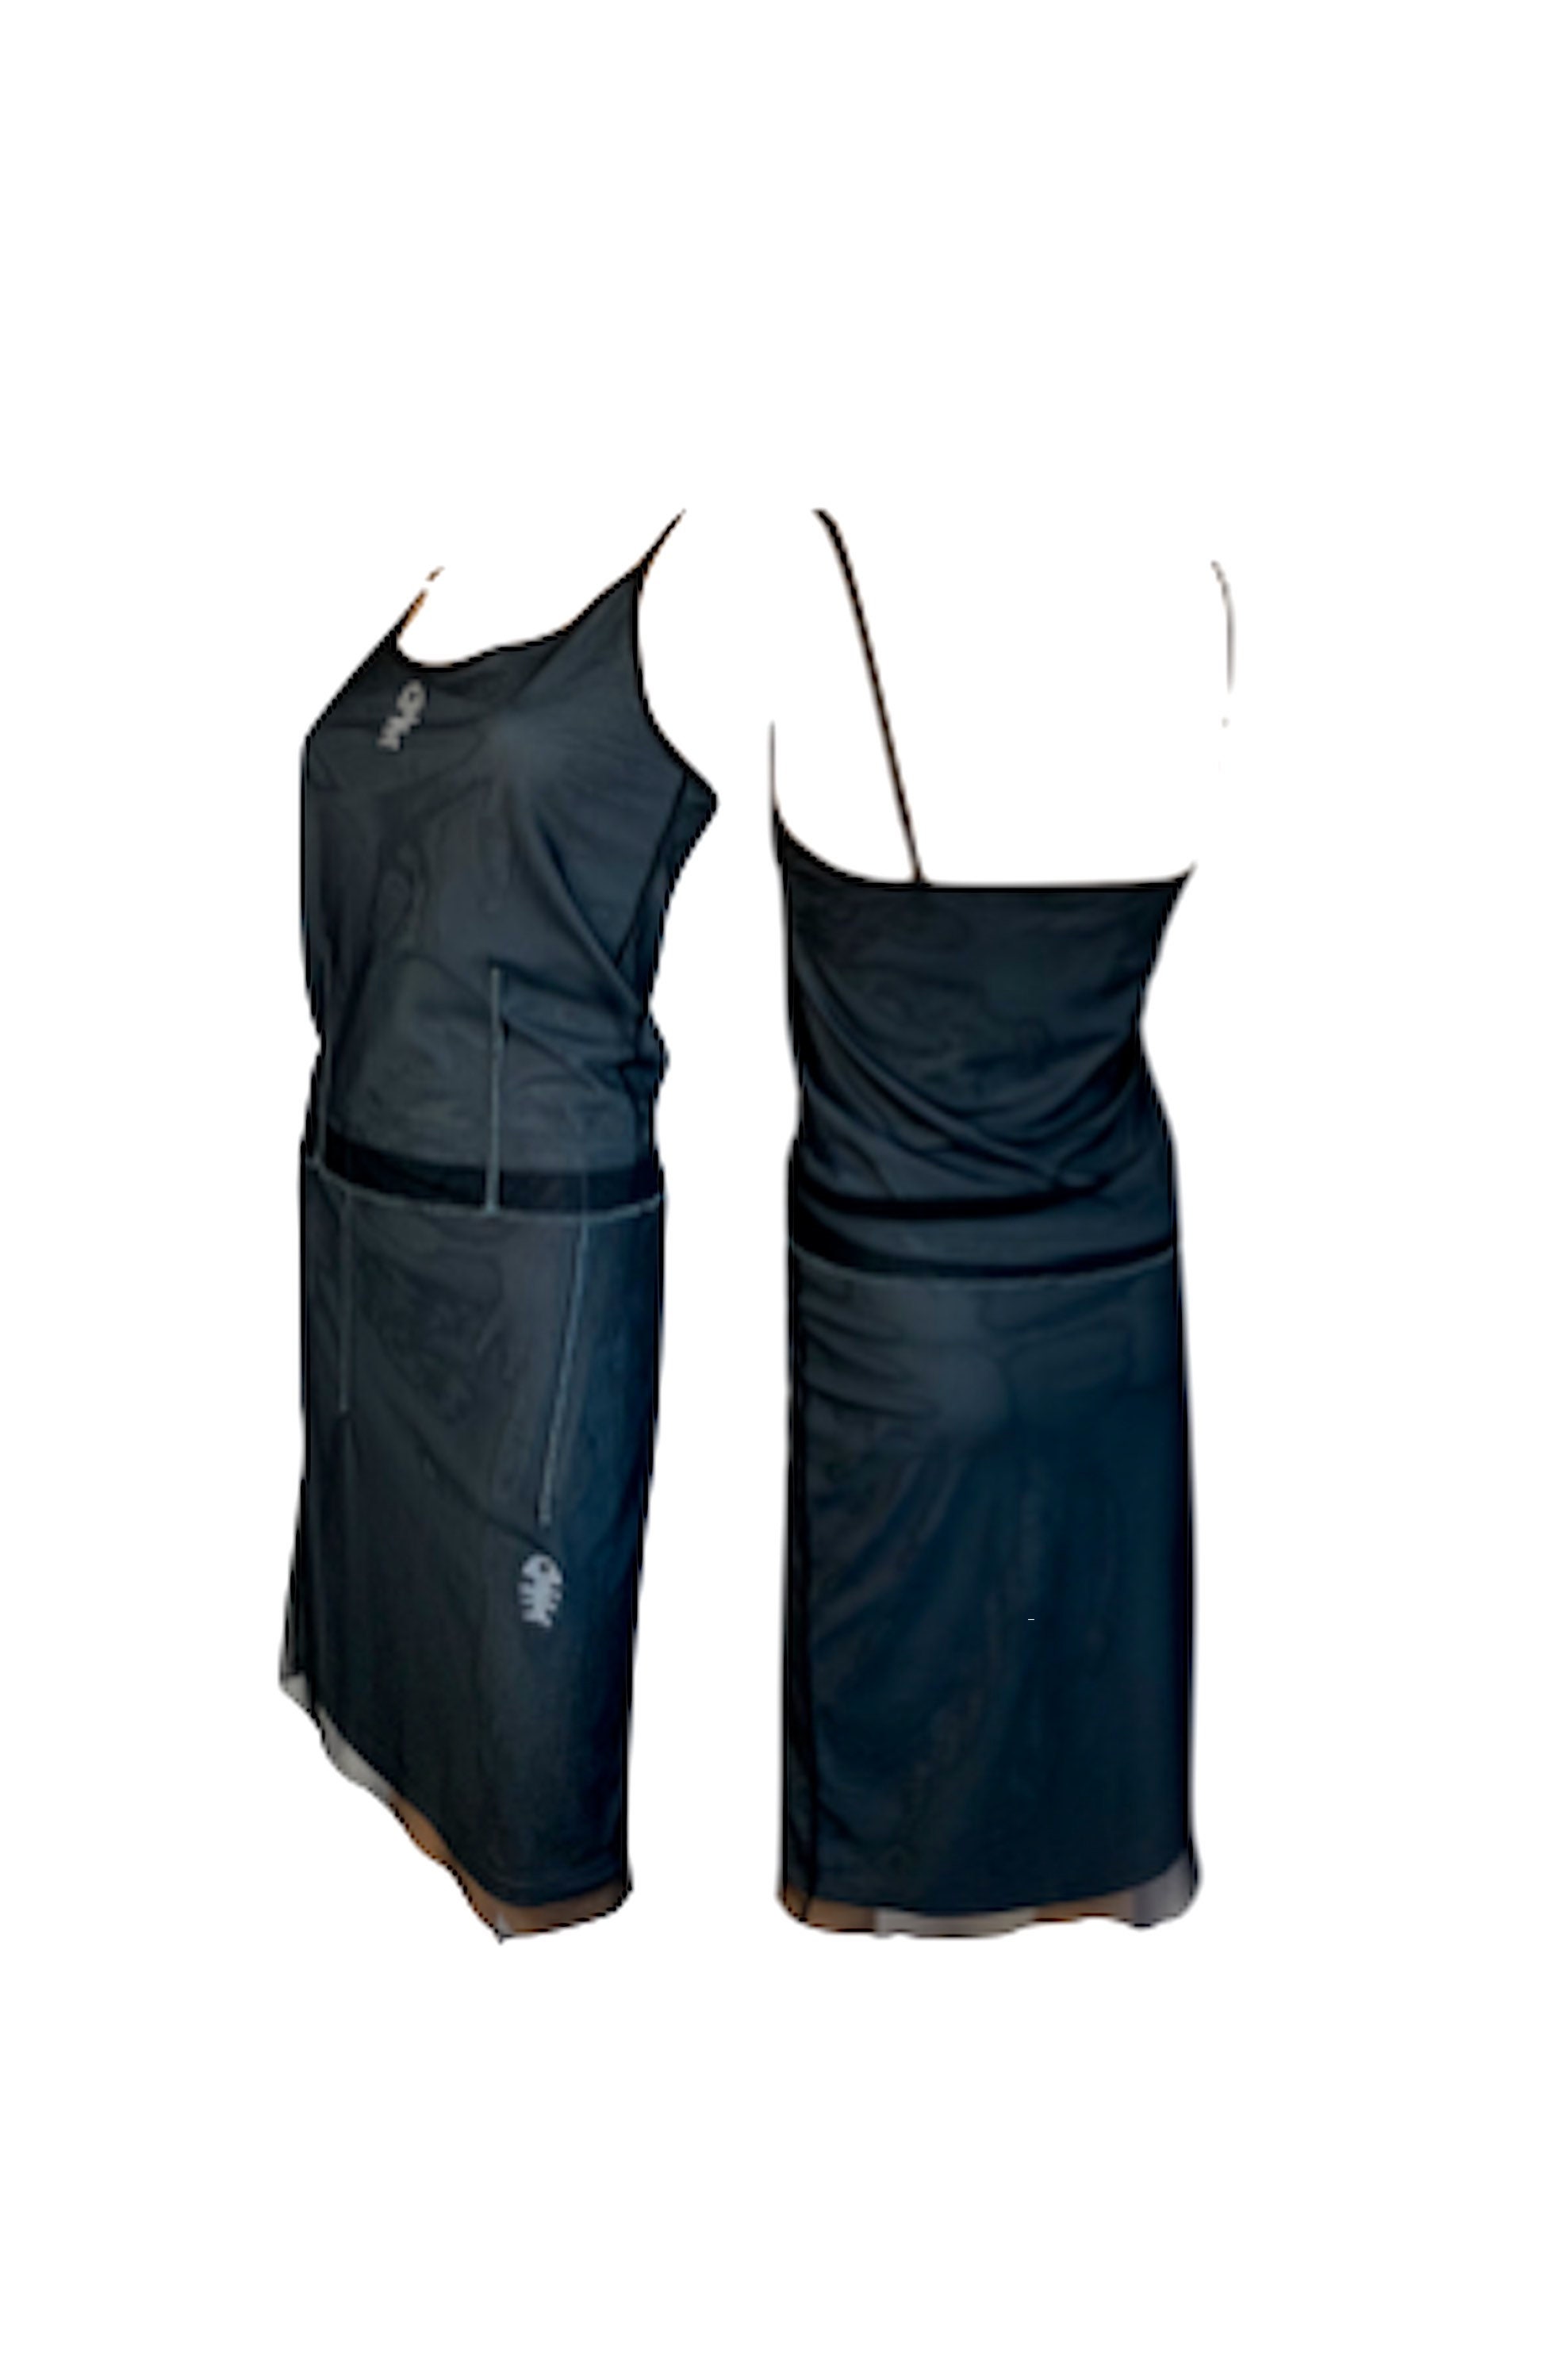 vintage Y2k Diplodocus black and grey tank top and mesh skirt set